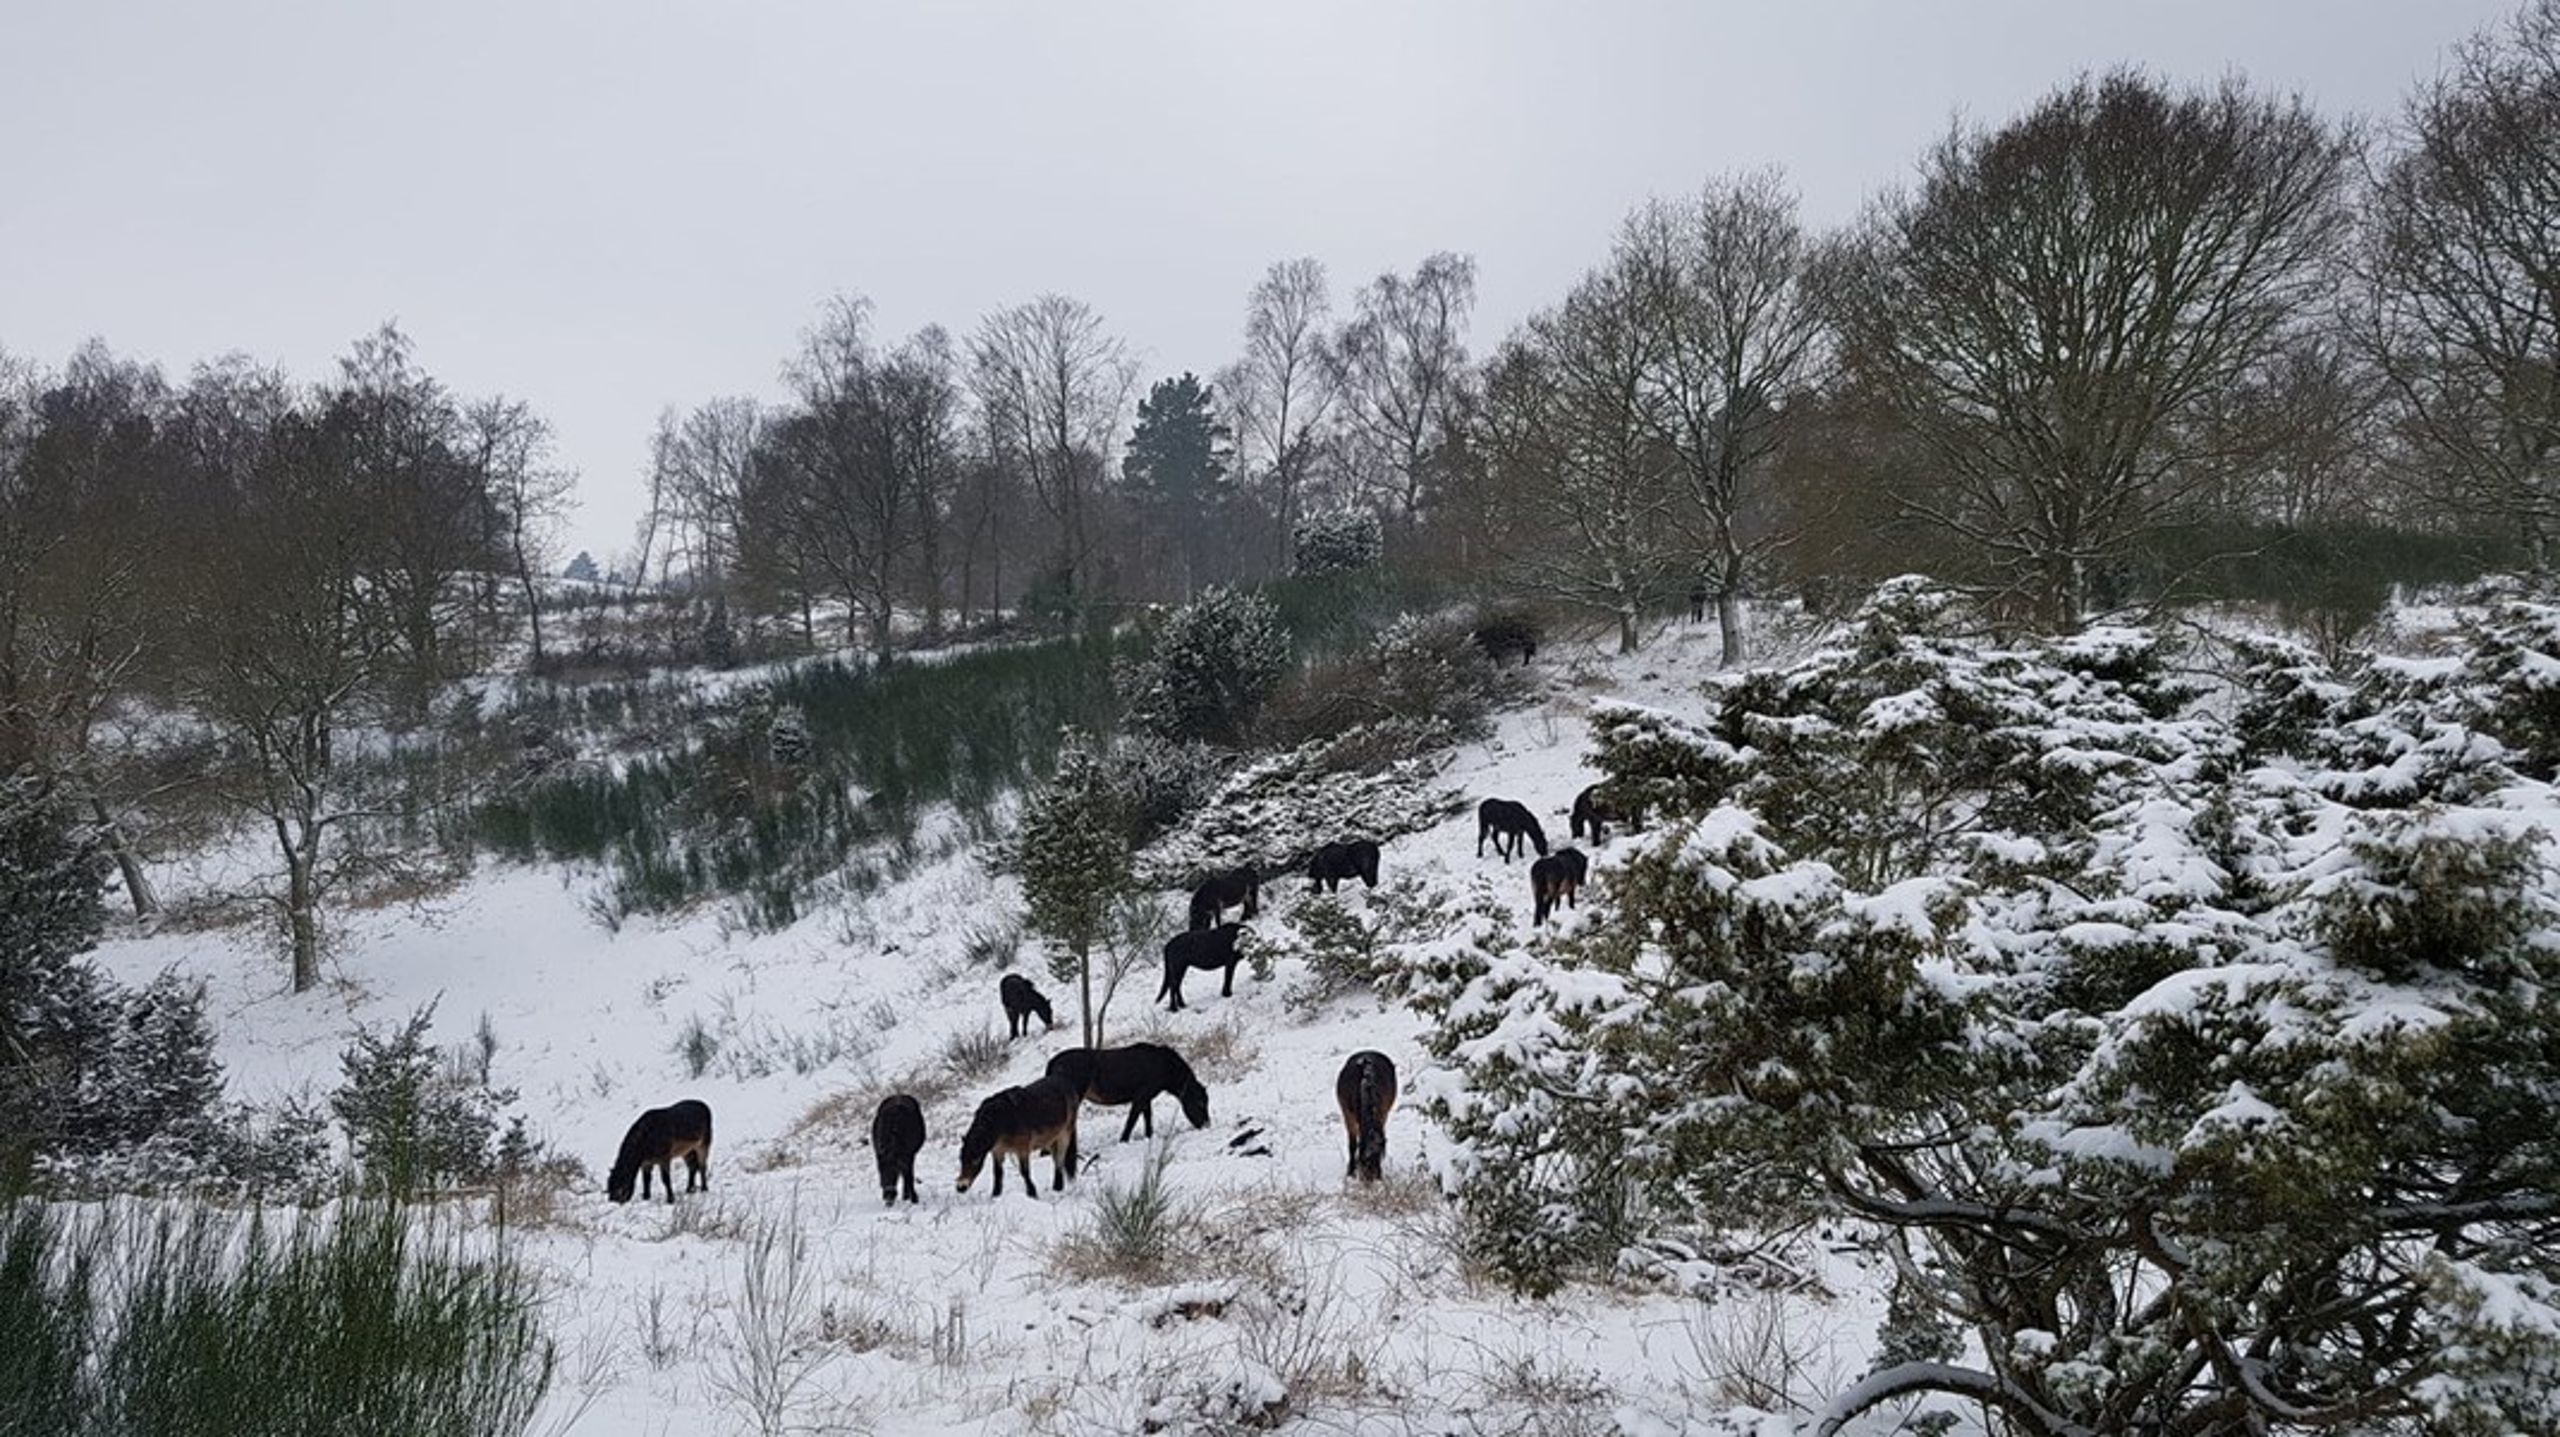 Det lader til, Dyrenes Beskyttelse vil aflive dyr inden vinterens komme, skriver Rasmus Ejrnæs.